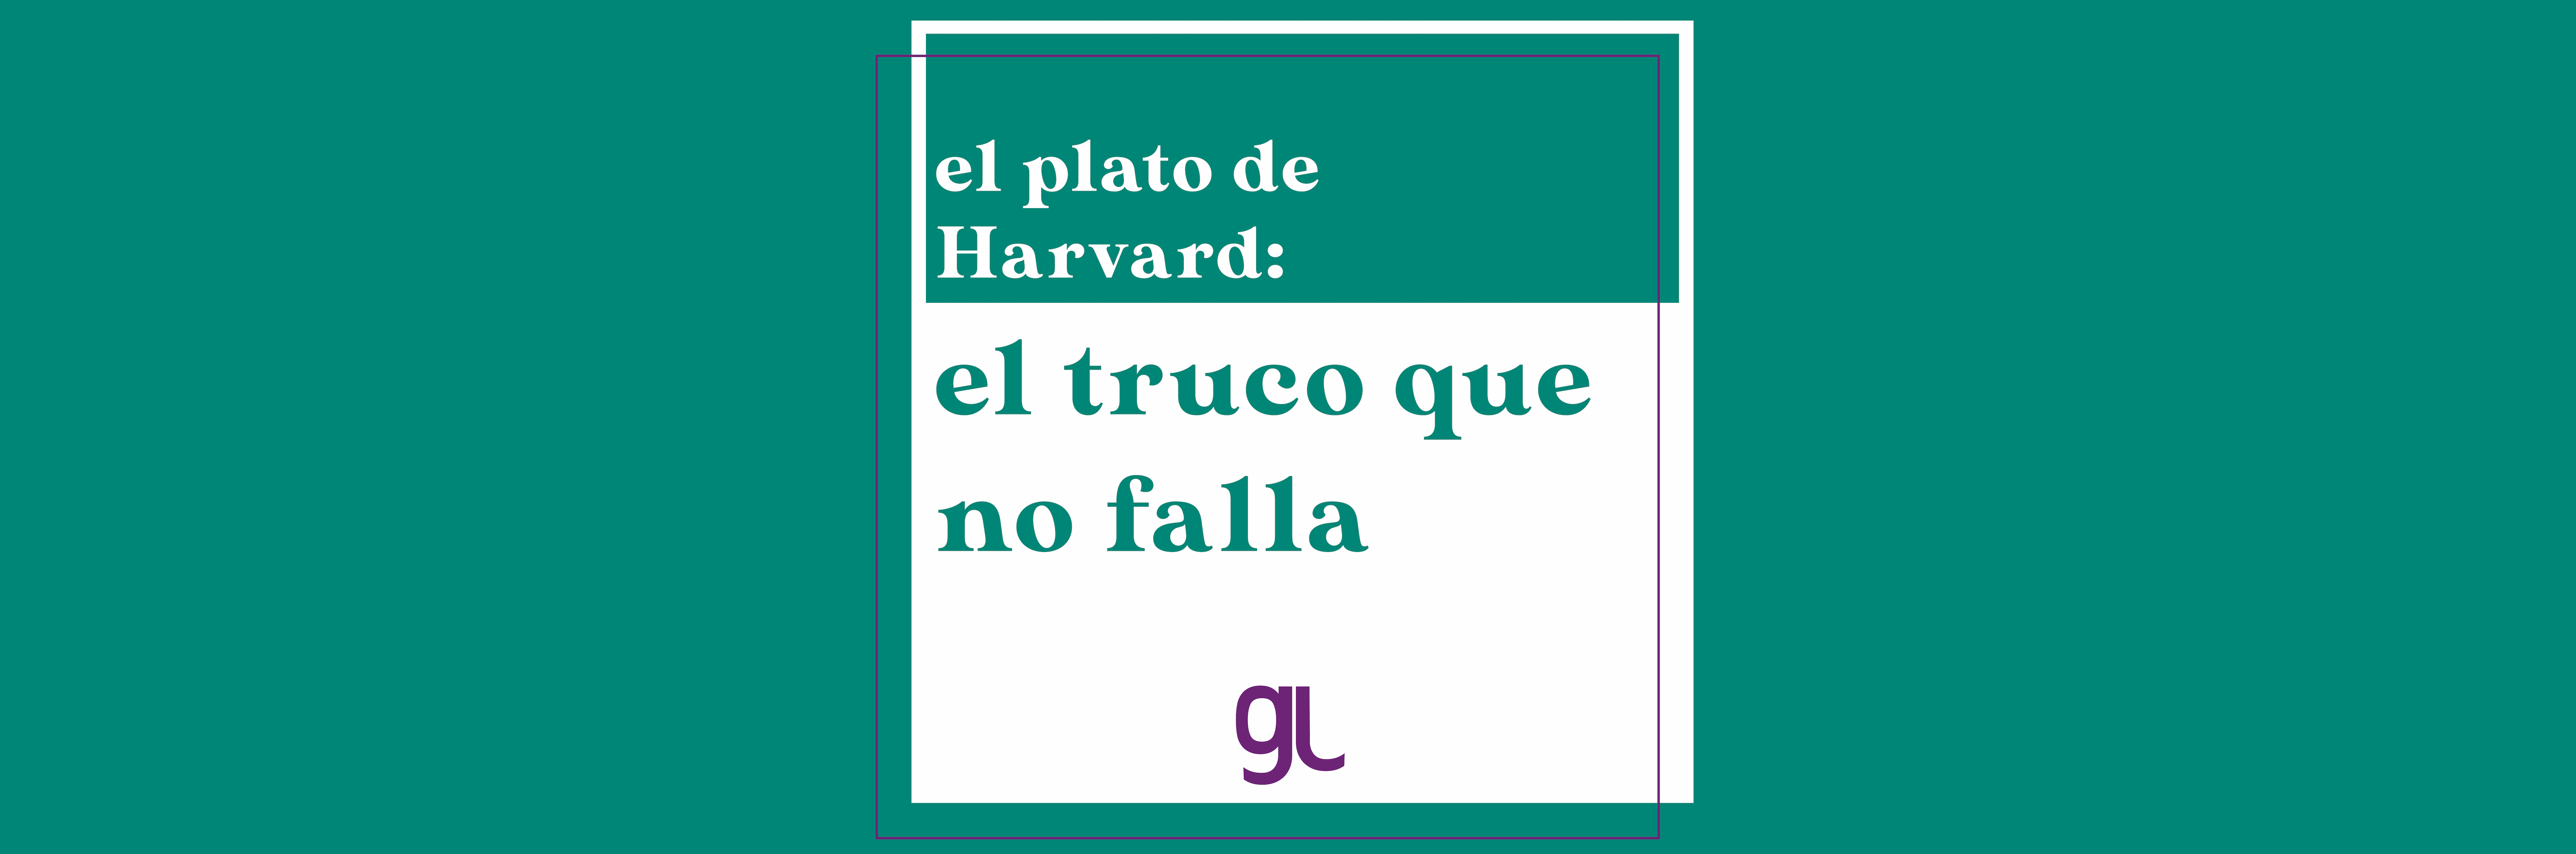 El Plato de Harvard: argumentos a favor y en contra